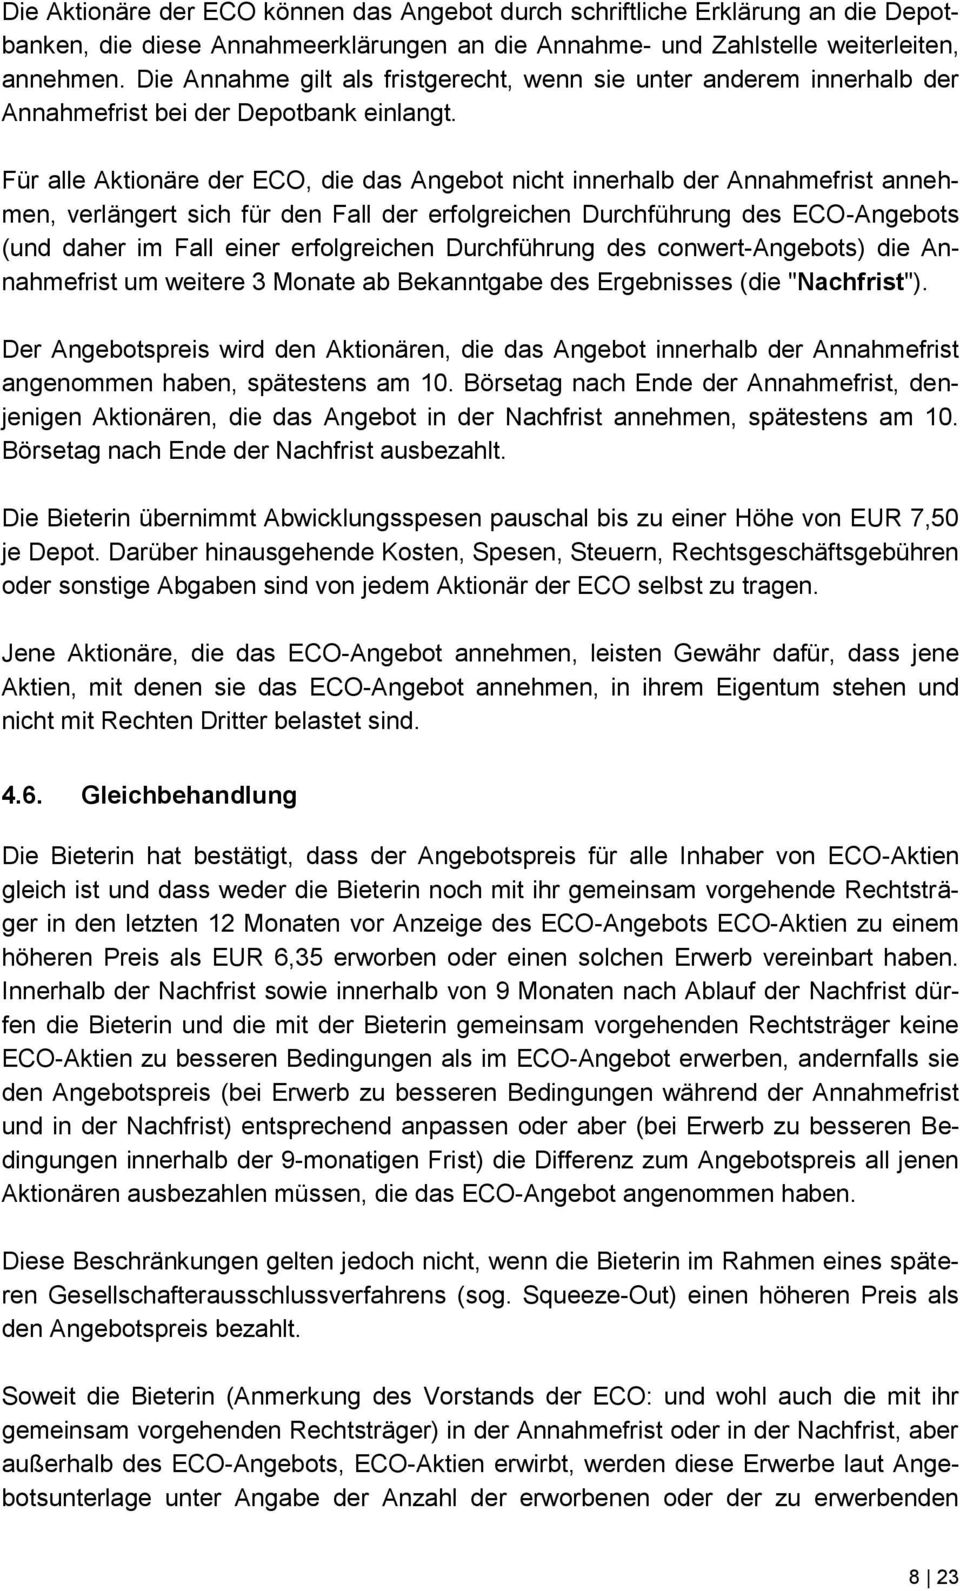 Für alle Aktionäre der ECO, die das Angebot nicht innerhalb der Annahmefrist annehmen, verlängert sich für den Fall der erfolgreichen Durchführung des ECO-Angebots (und daher im Fall einer